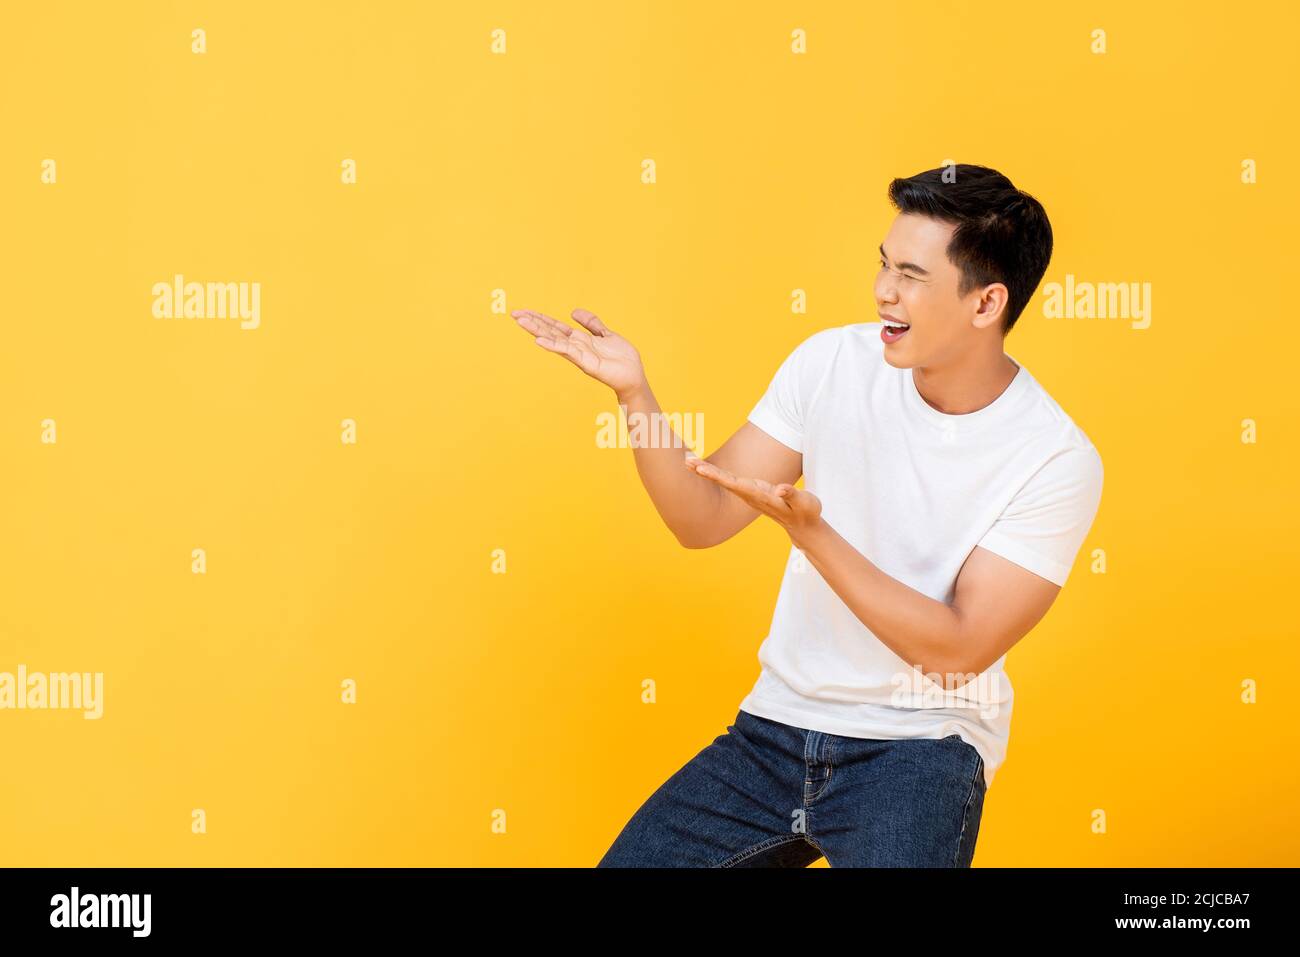 Fun Portrait von lächelnd junge gut aussehende asiatische Mann präsentiert mit Offene Handflächen Geste in isolierten Studio gelben Hintergrund mit Kopie Platz Stockfoto